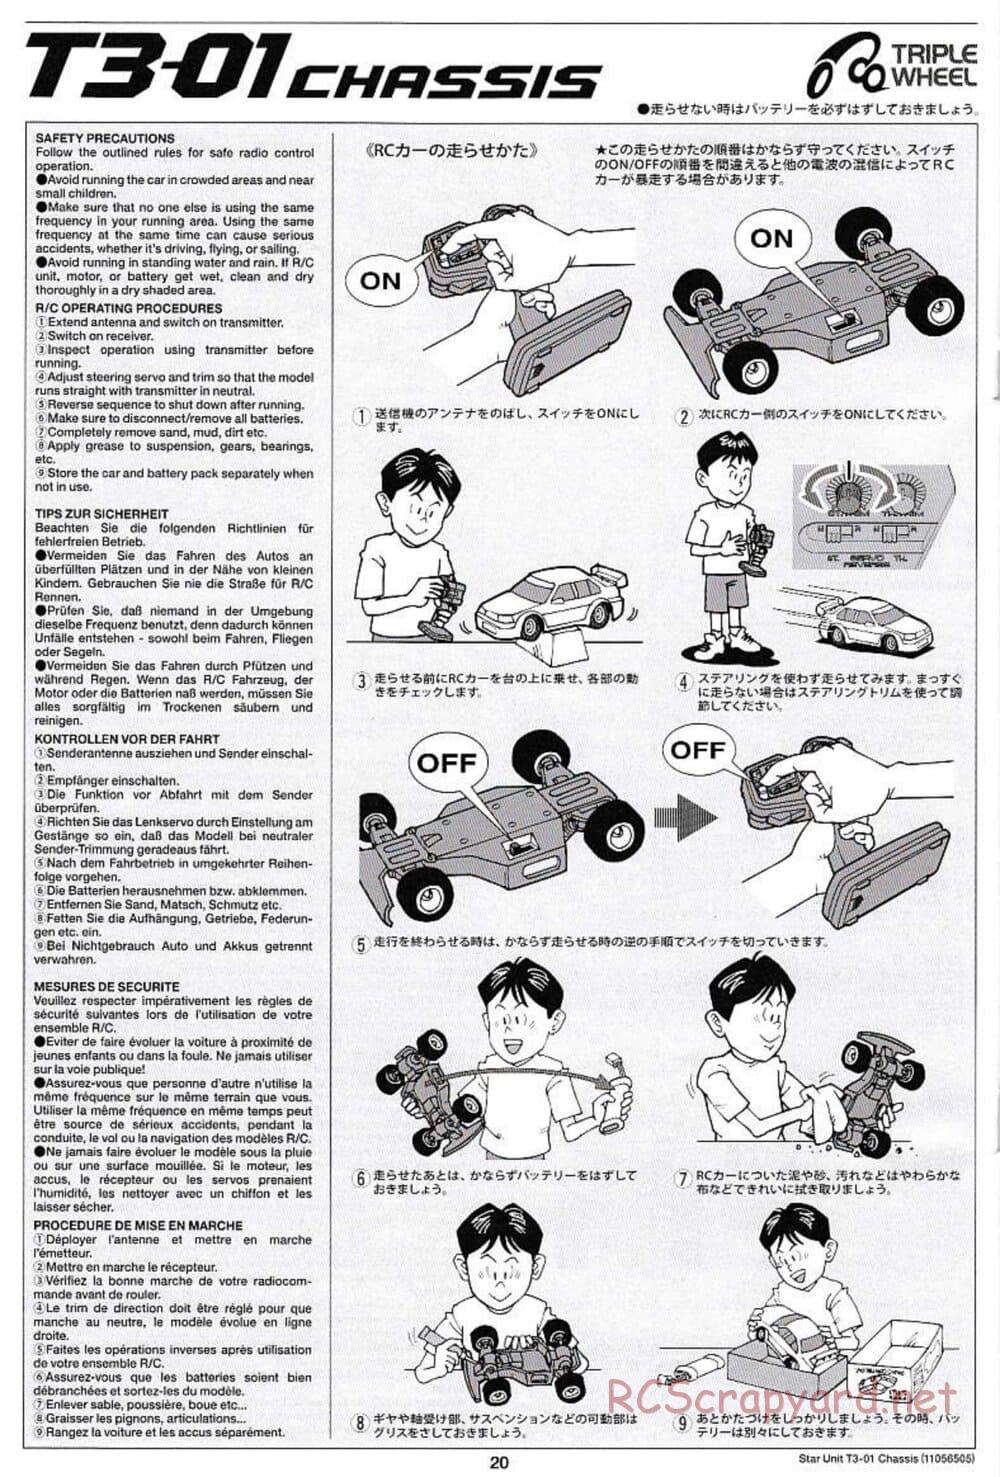 Tamiya - T3-01 Chassis - Manual - Page 20